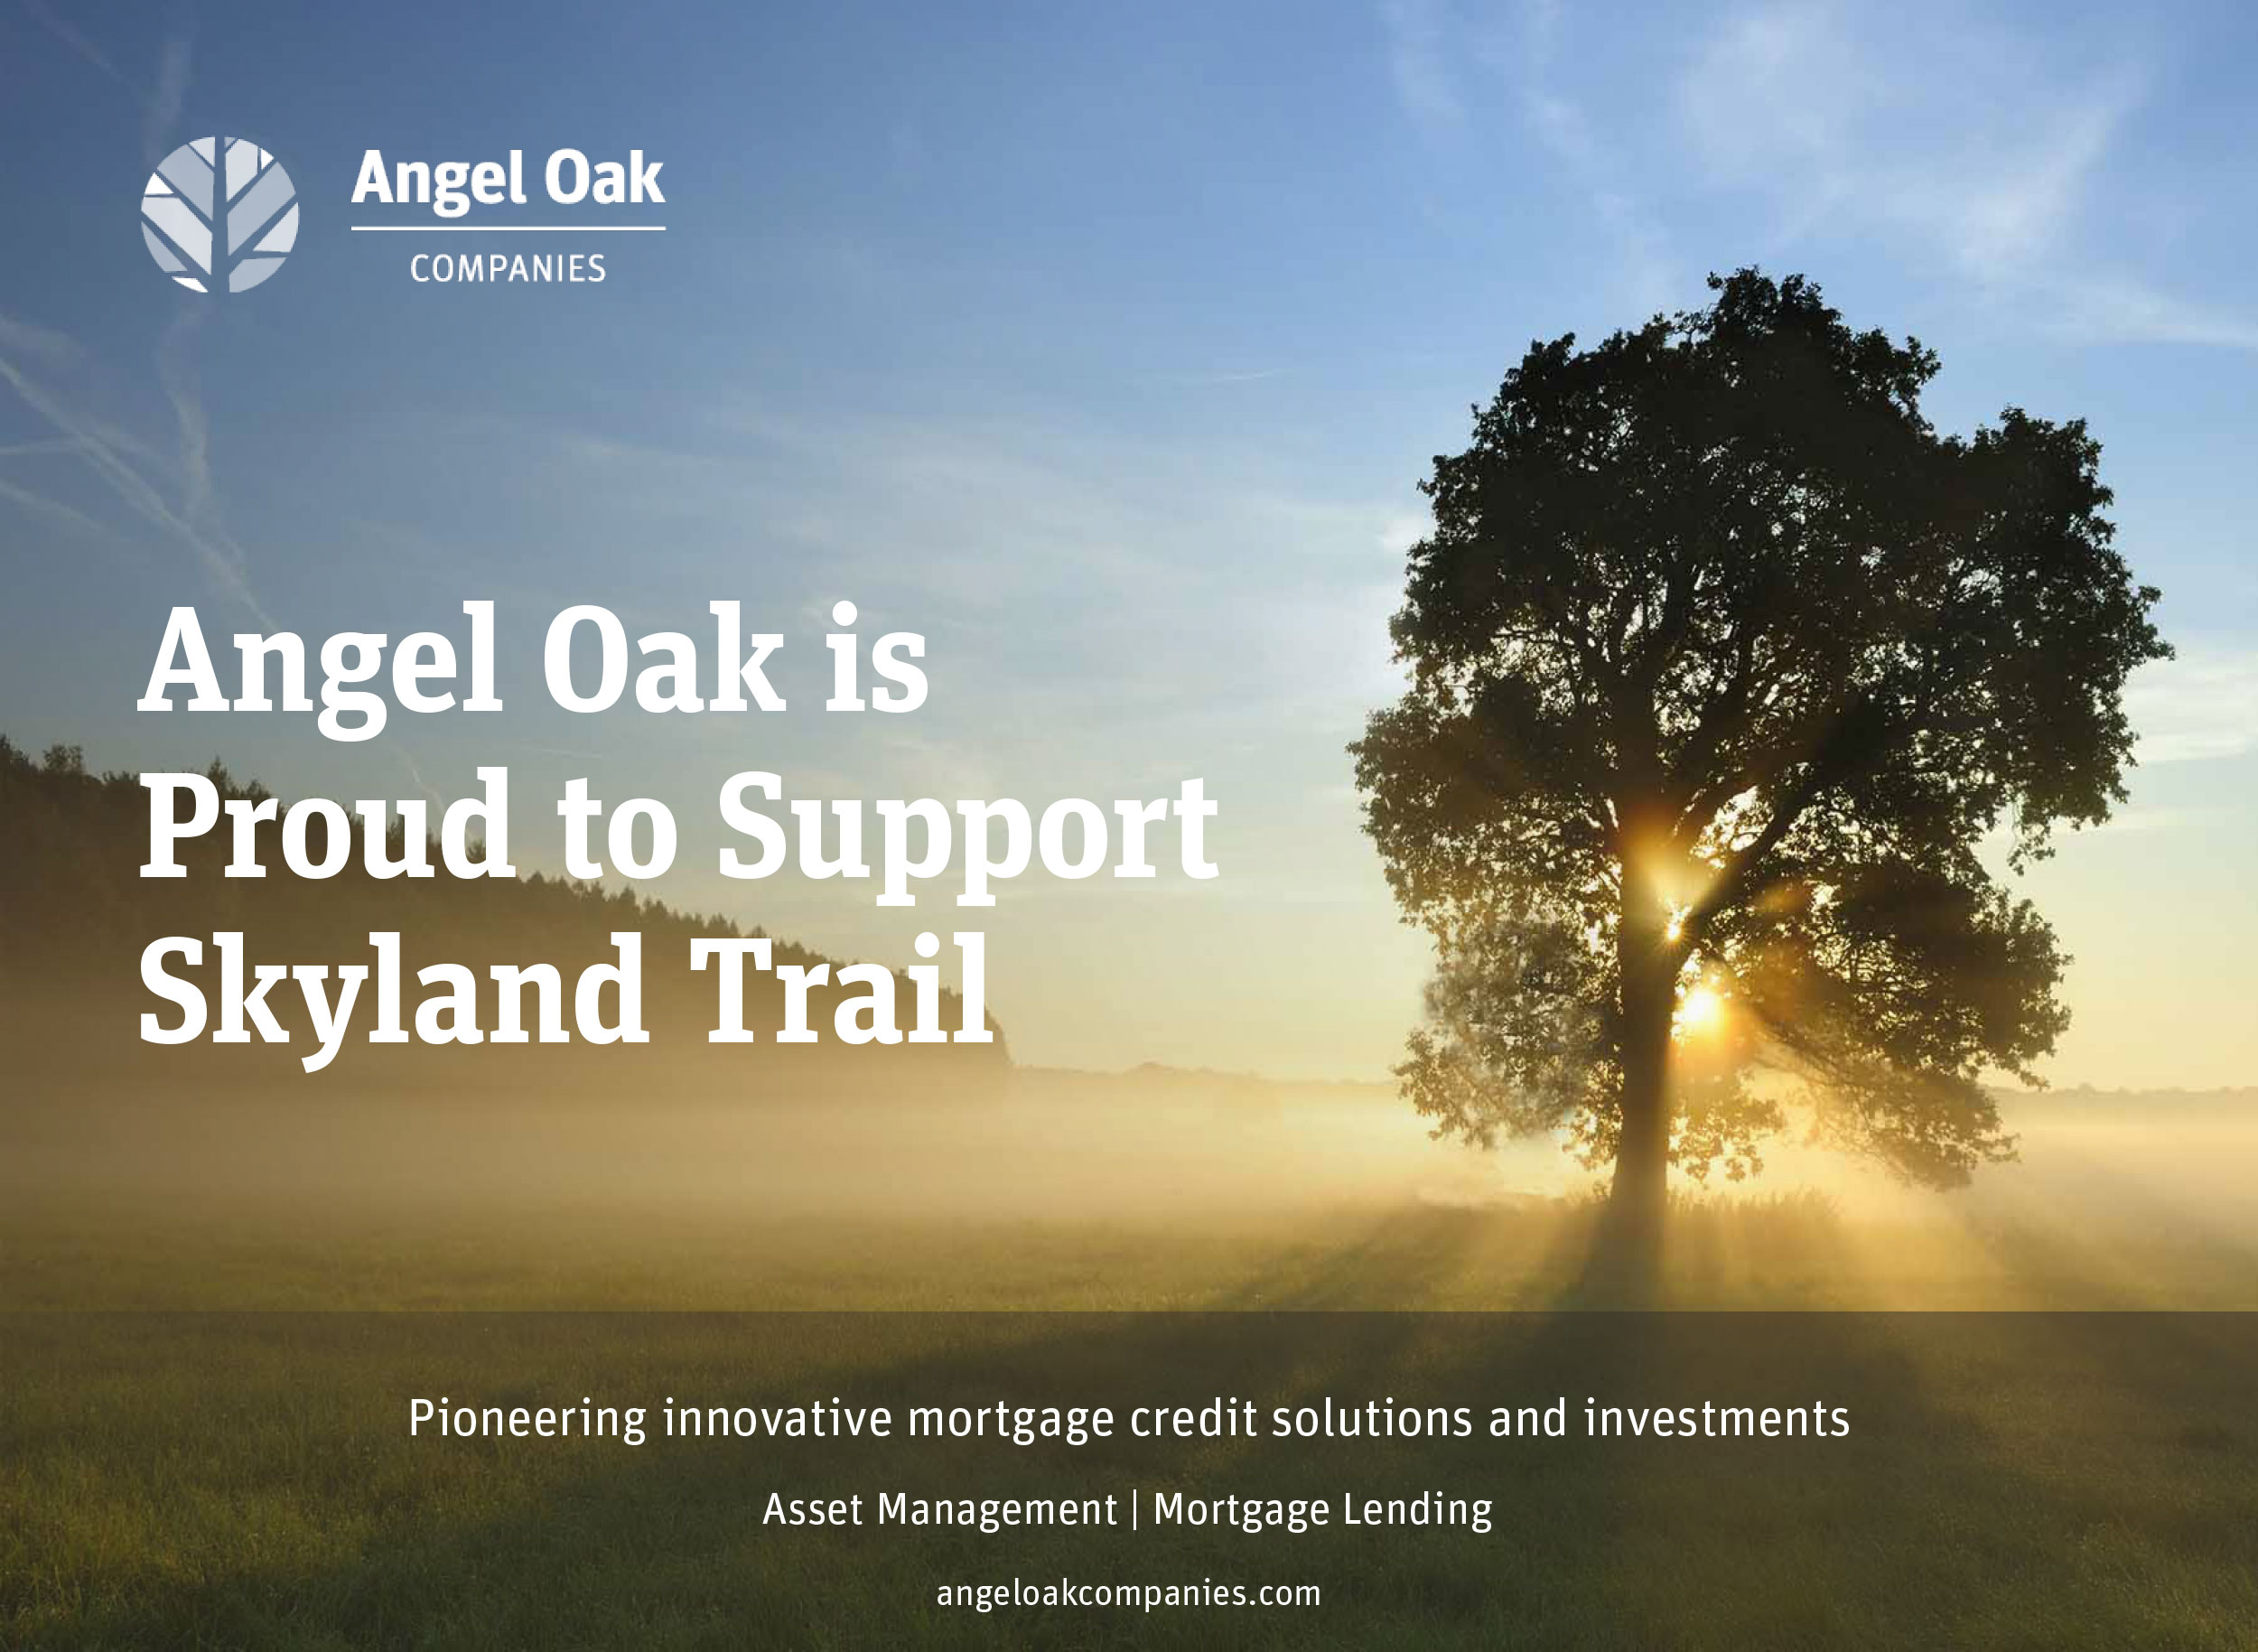 Angel Oak is proud to support Skyland Trail